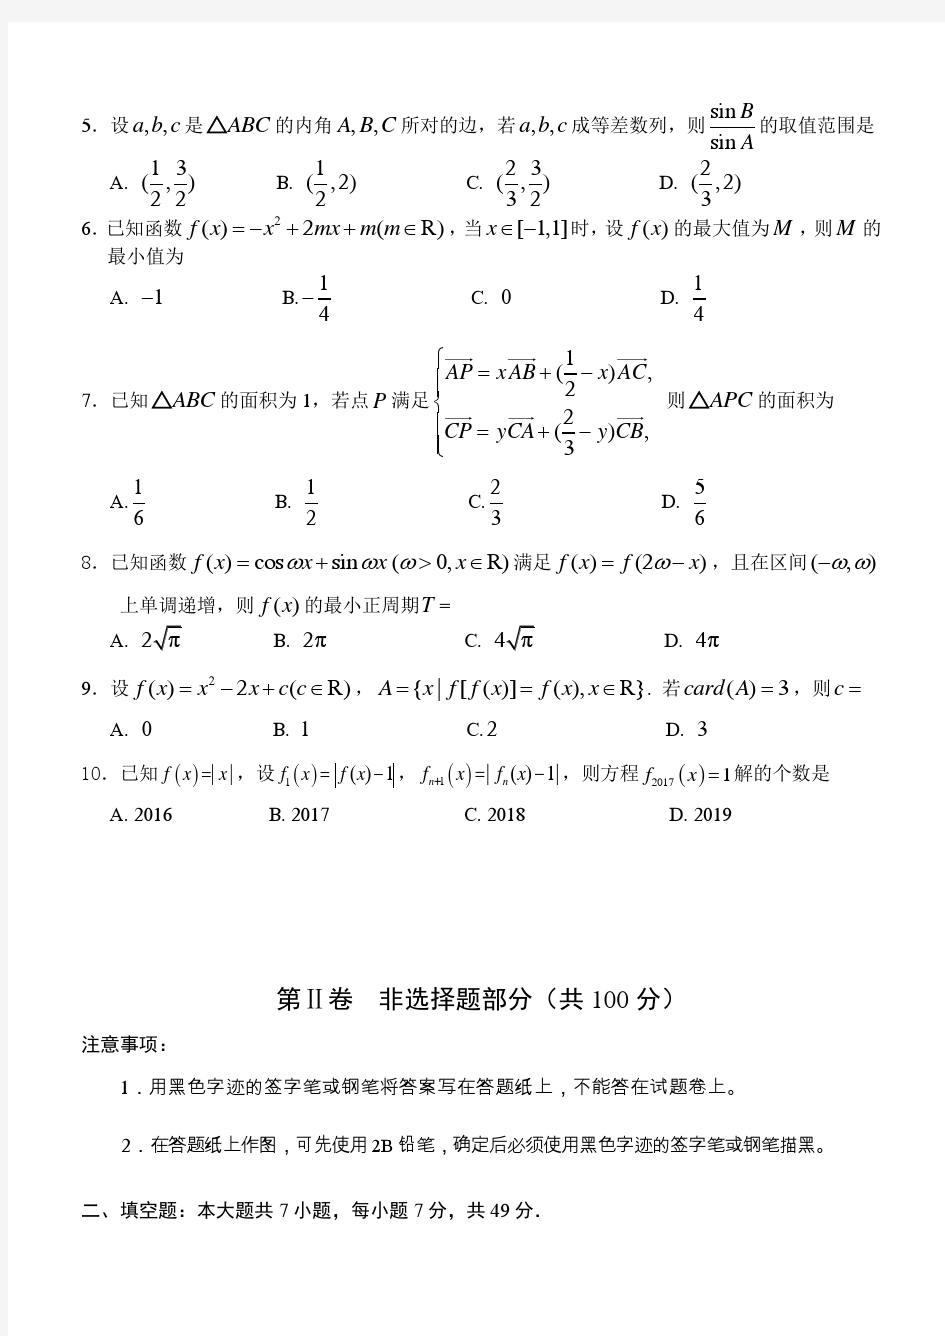 2017年丽水市高中数学竞赛试题卷(含答案)